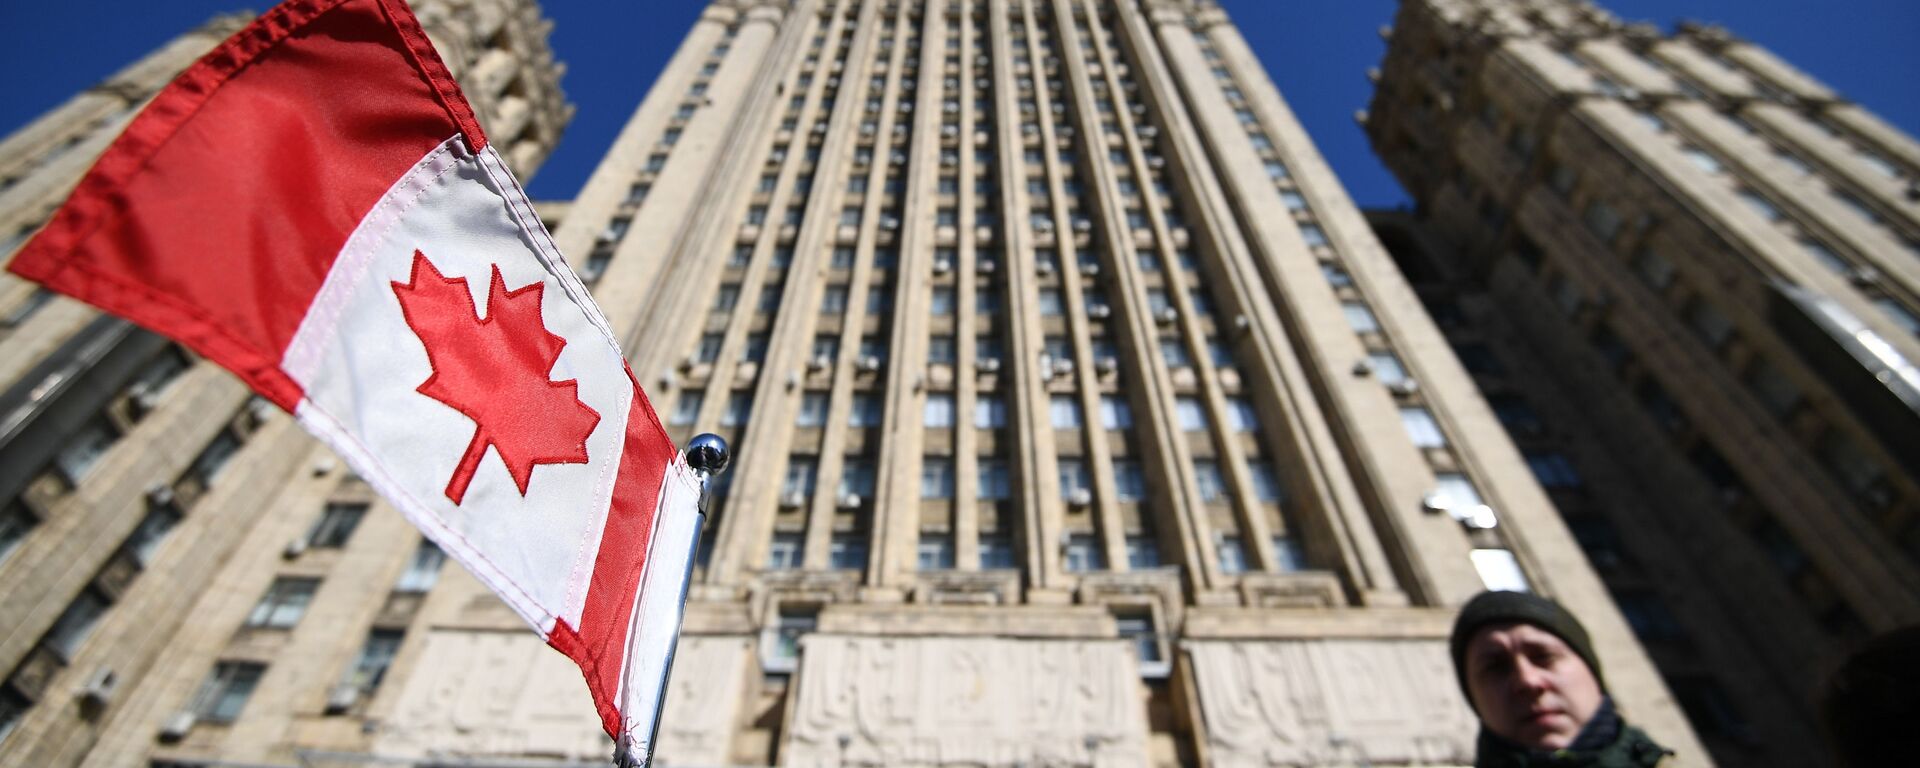 Bandeira nacional do Canadá no carro da embaixada canadense em frente ao prédio do Ministério das Relações Exteriores da Federação da Rússia, para onde foram convocados embaixadores de países que expulsaram diplomatas russos - Sputnik Brasil, 1920, 09.12.2022